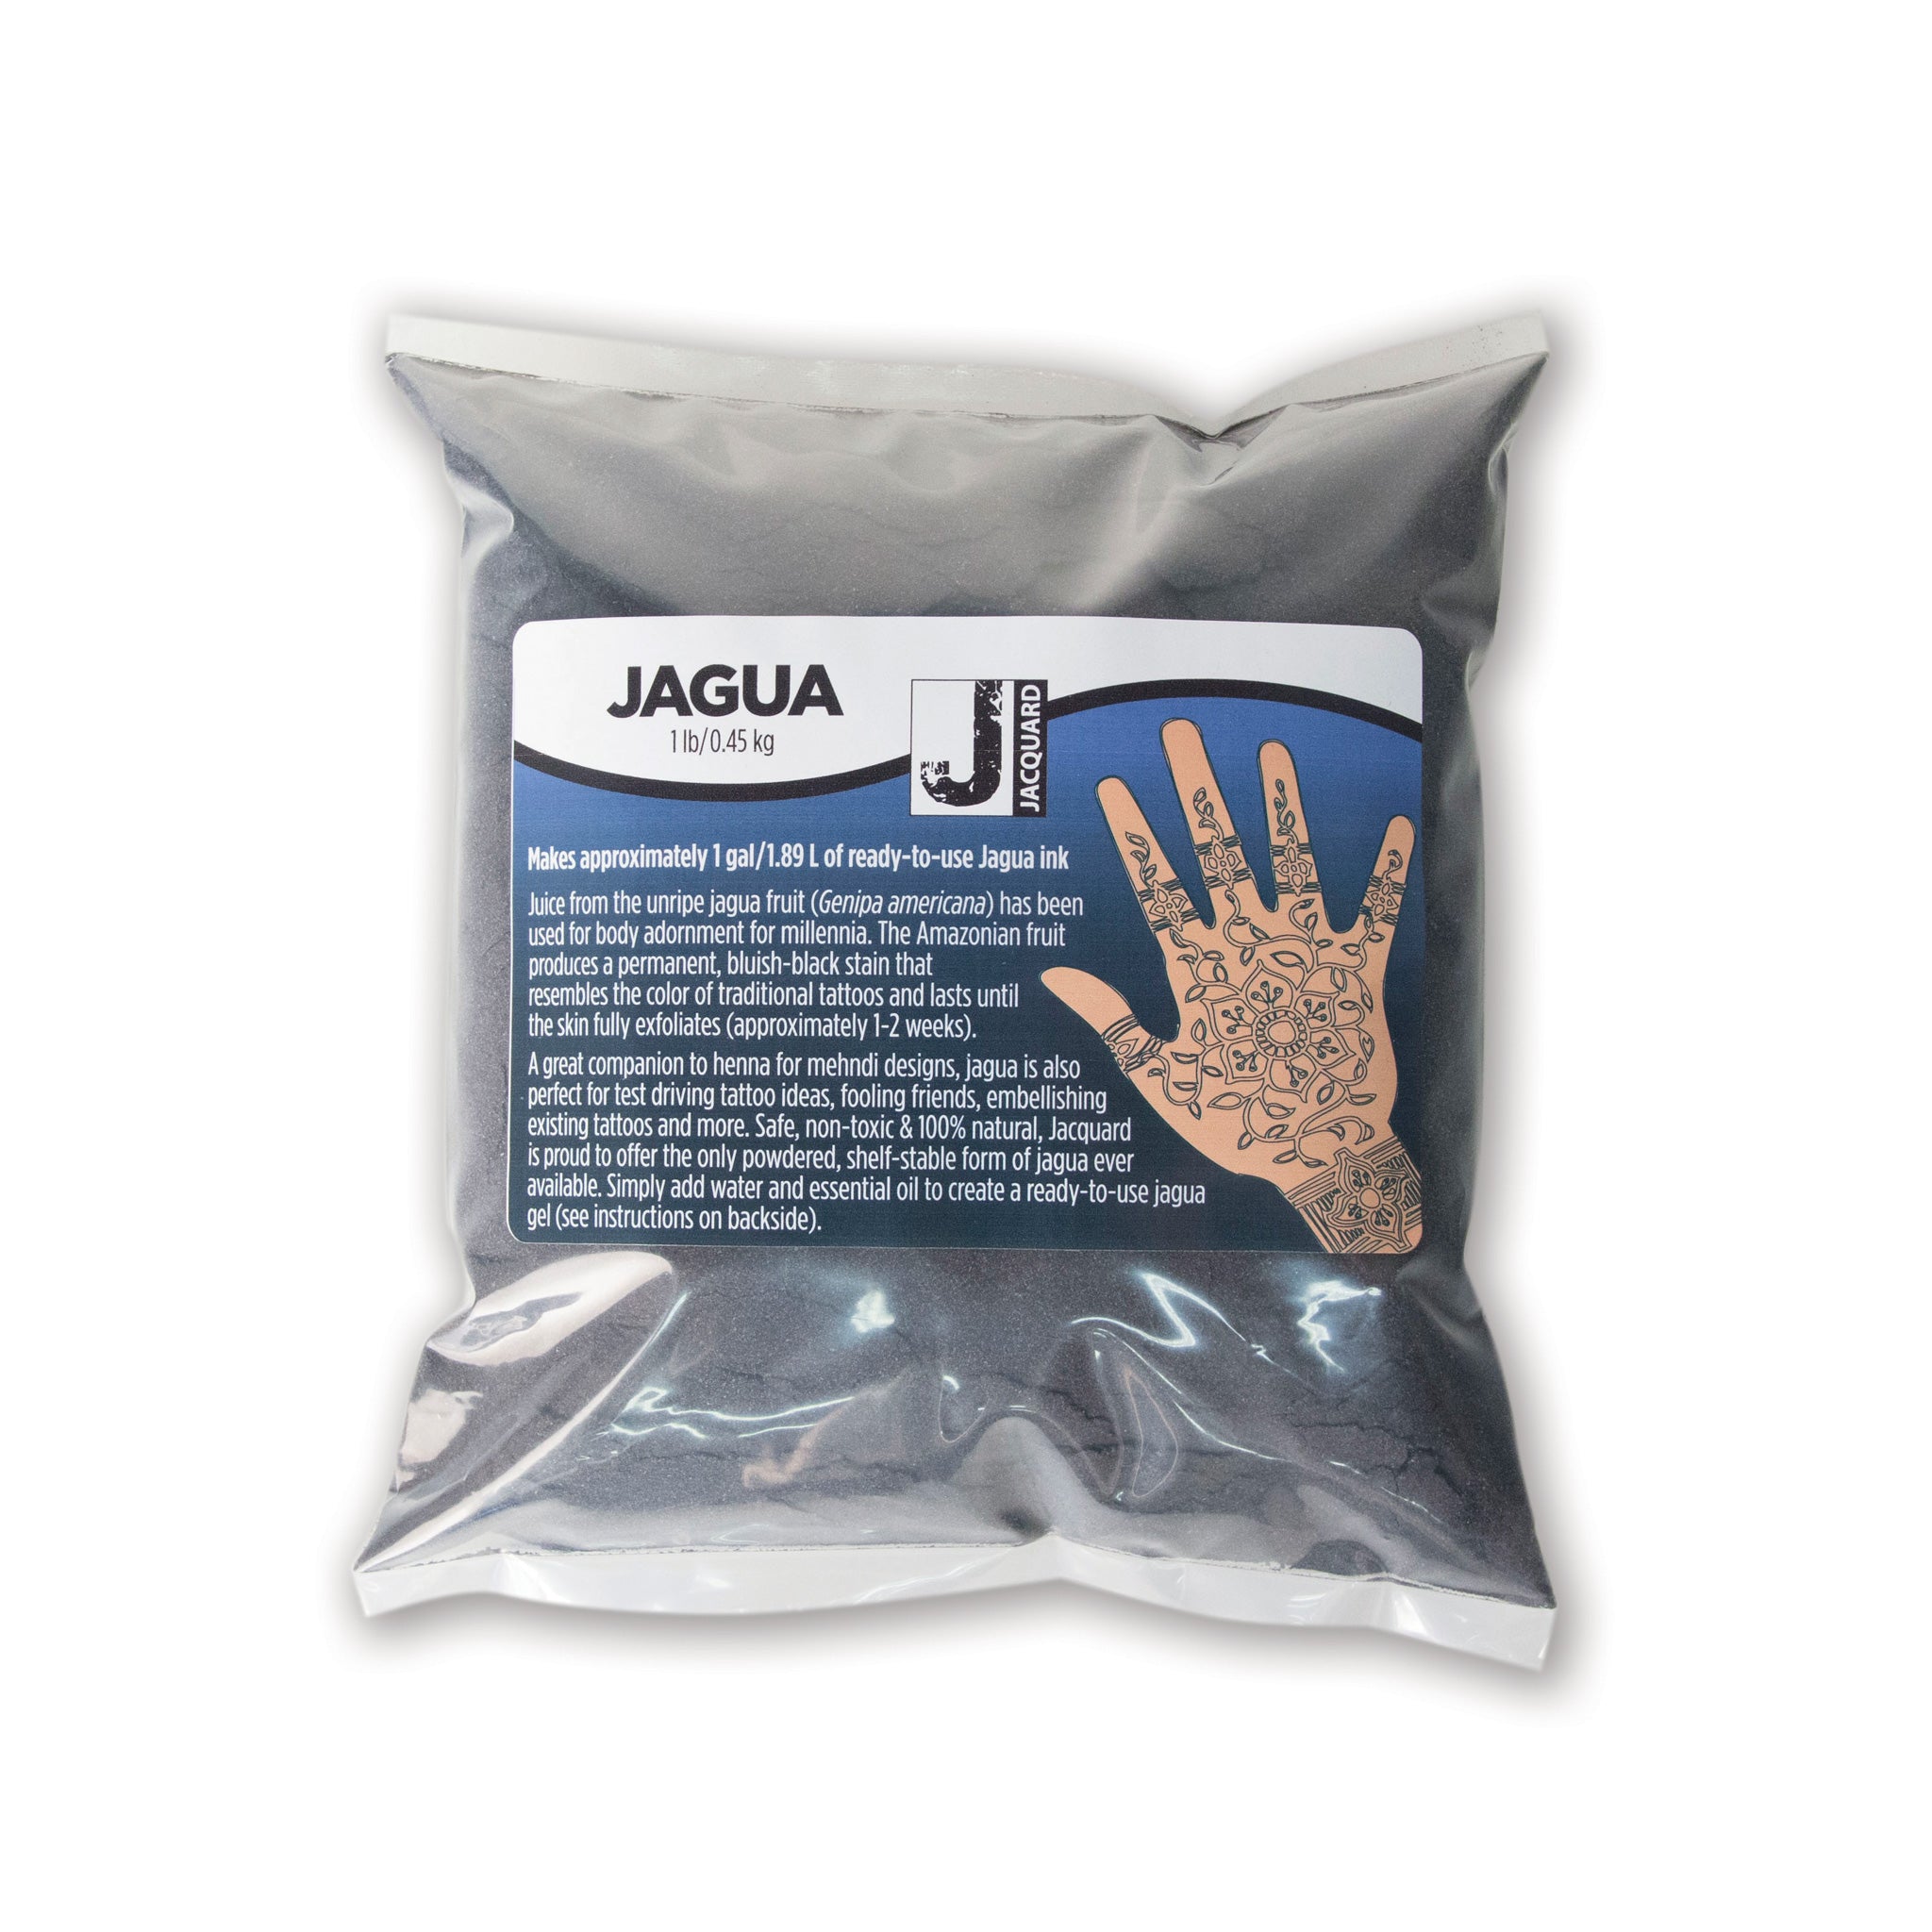 Jagua - Pre-mixed